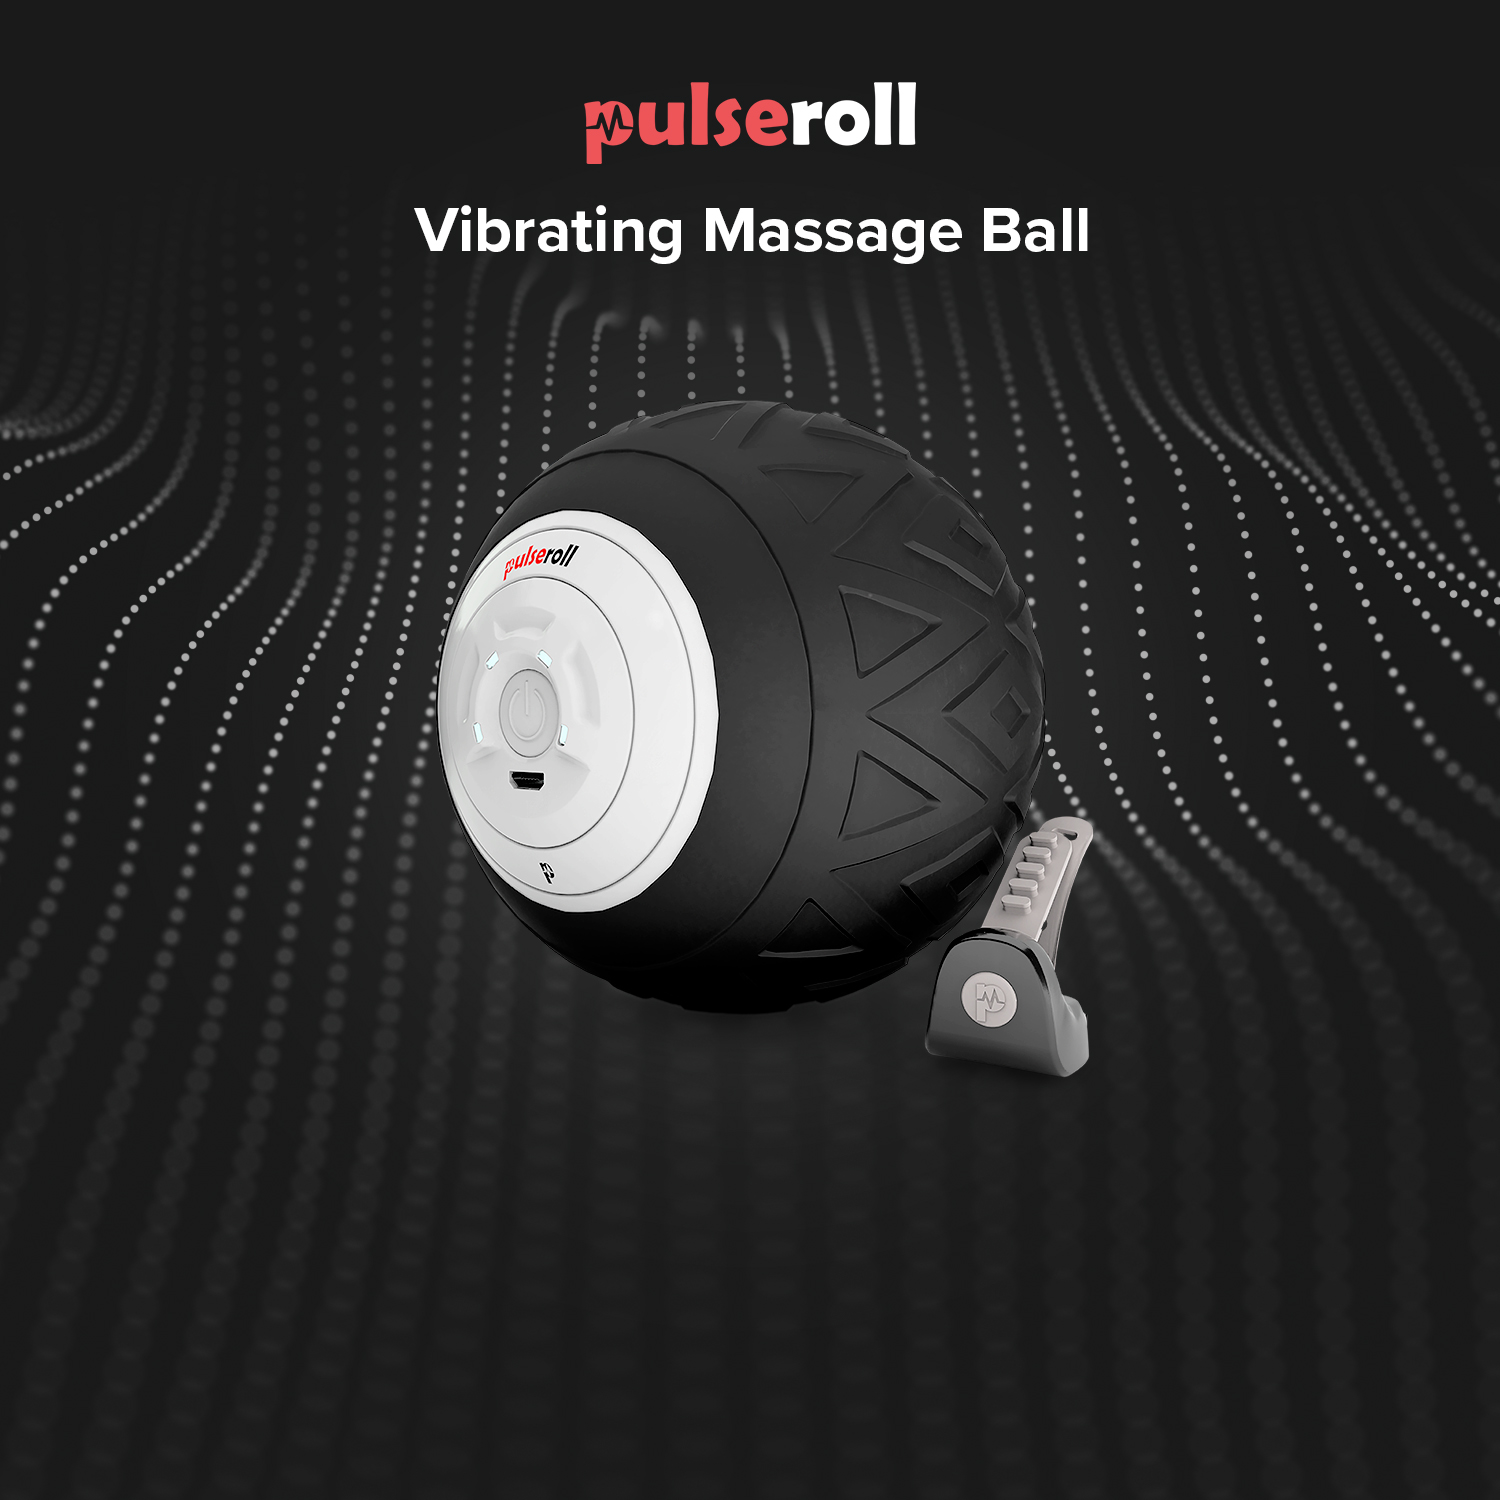 VIBRATING MASSAGE BALL Pulseroll